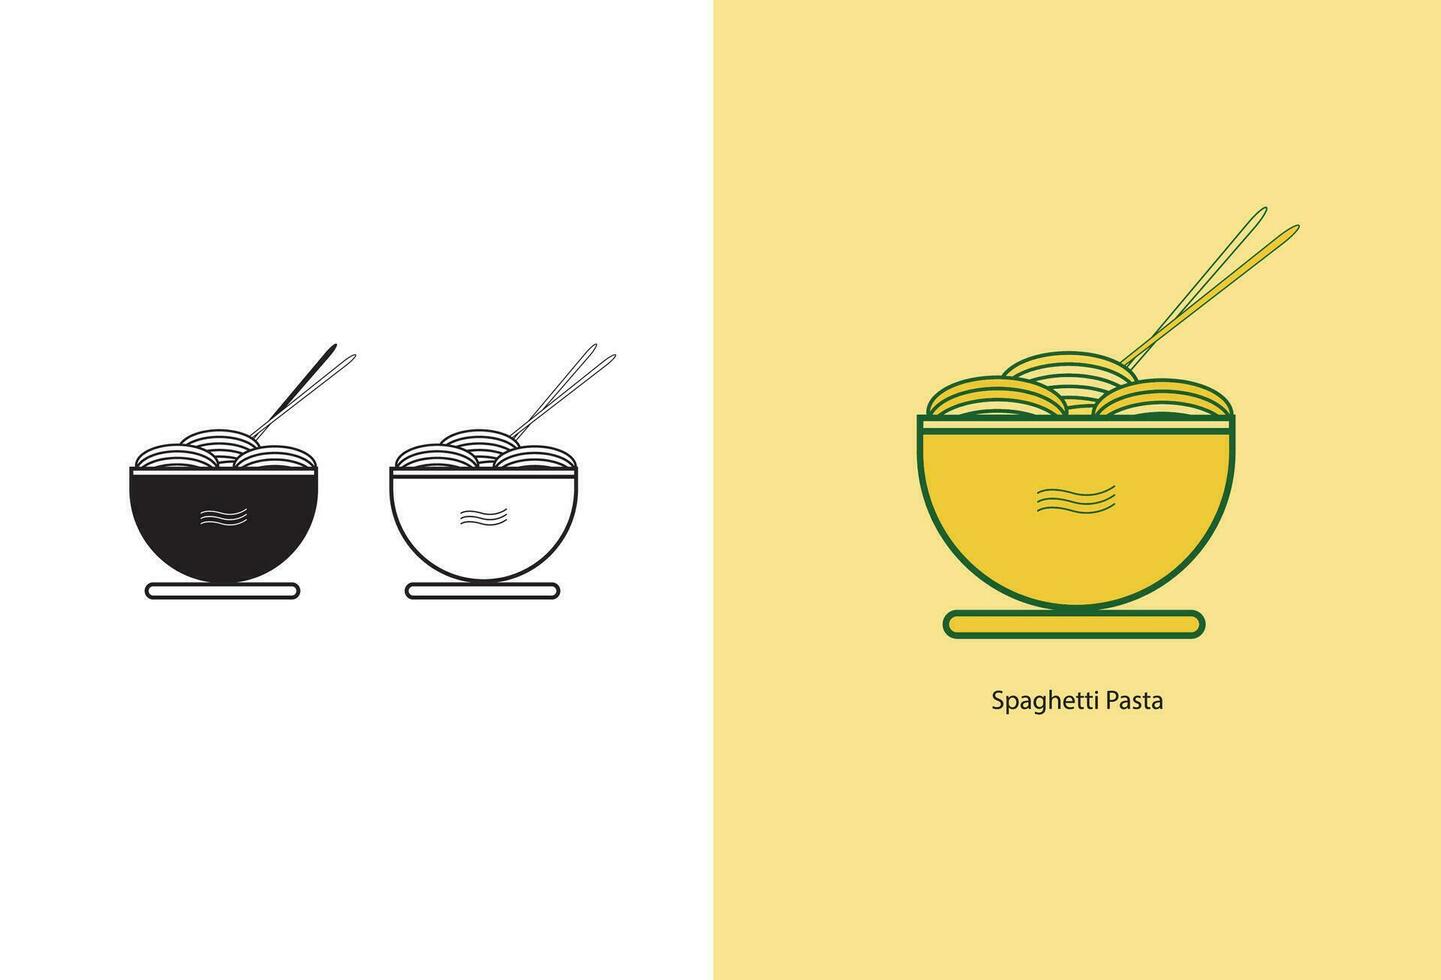 de spaghetti icoon is een vector illustratie dat beeldt af de concept van spaghetti of pasta. het is een grafisch vertegenwoordiging dat kan worden gebruikt voor divers doeleinden in ontwerp en illustratie projecten.